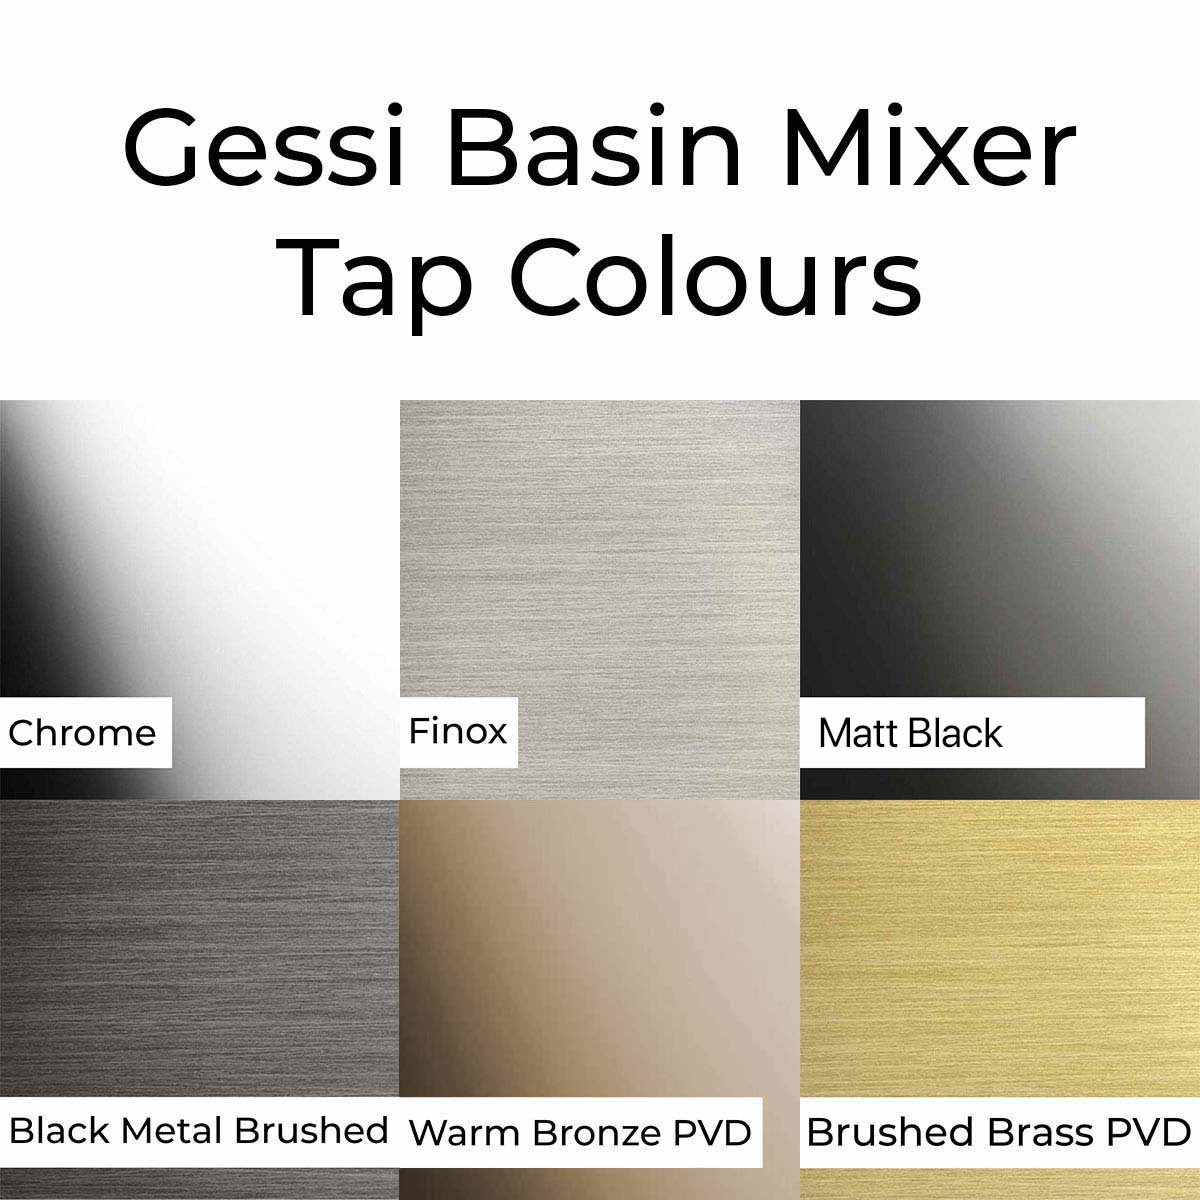 Gessi Via Tortona Wall Mounted Basin Mixer Colours